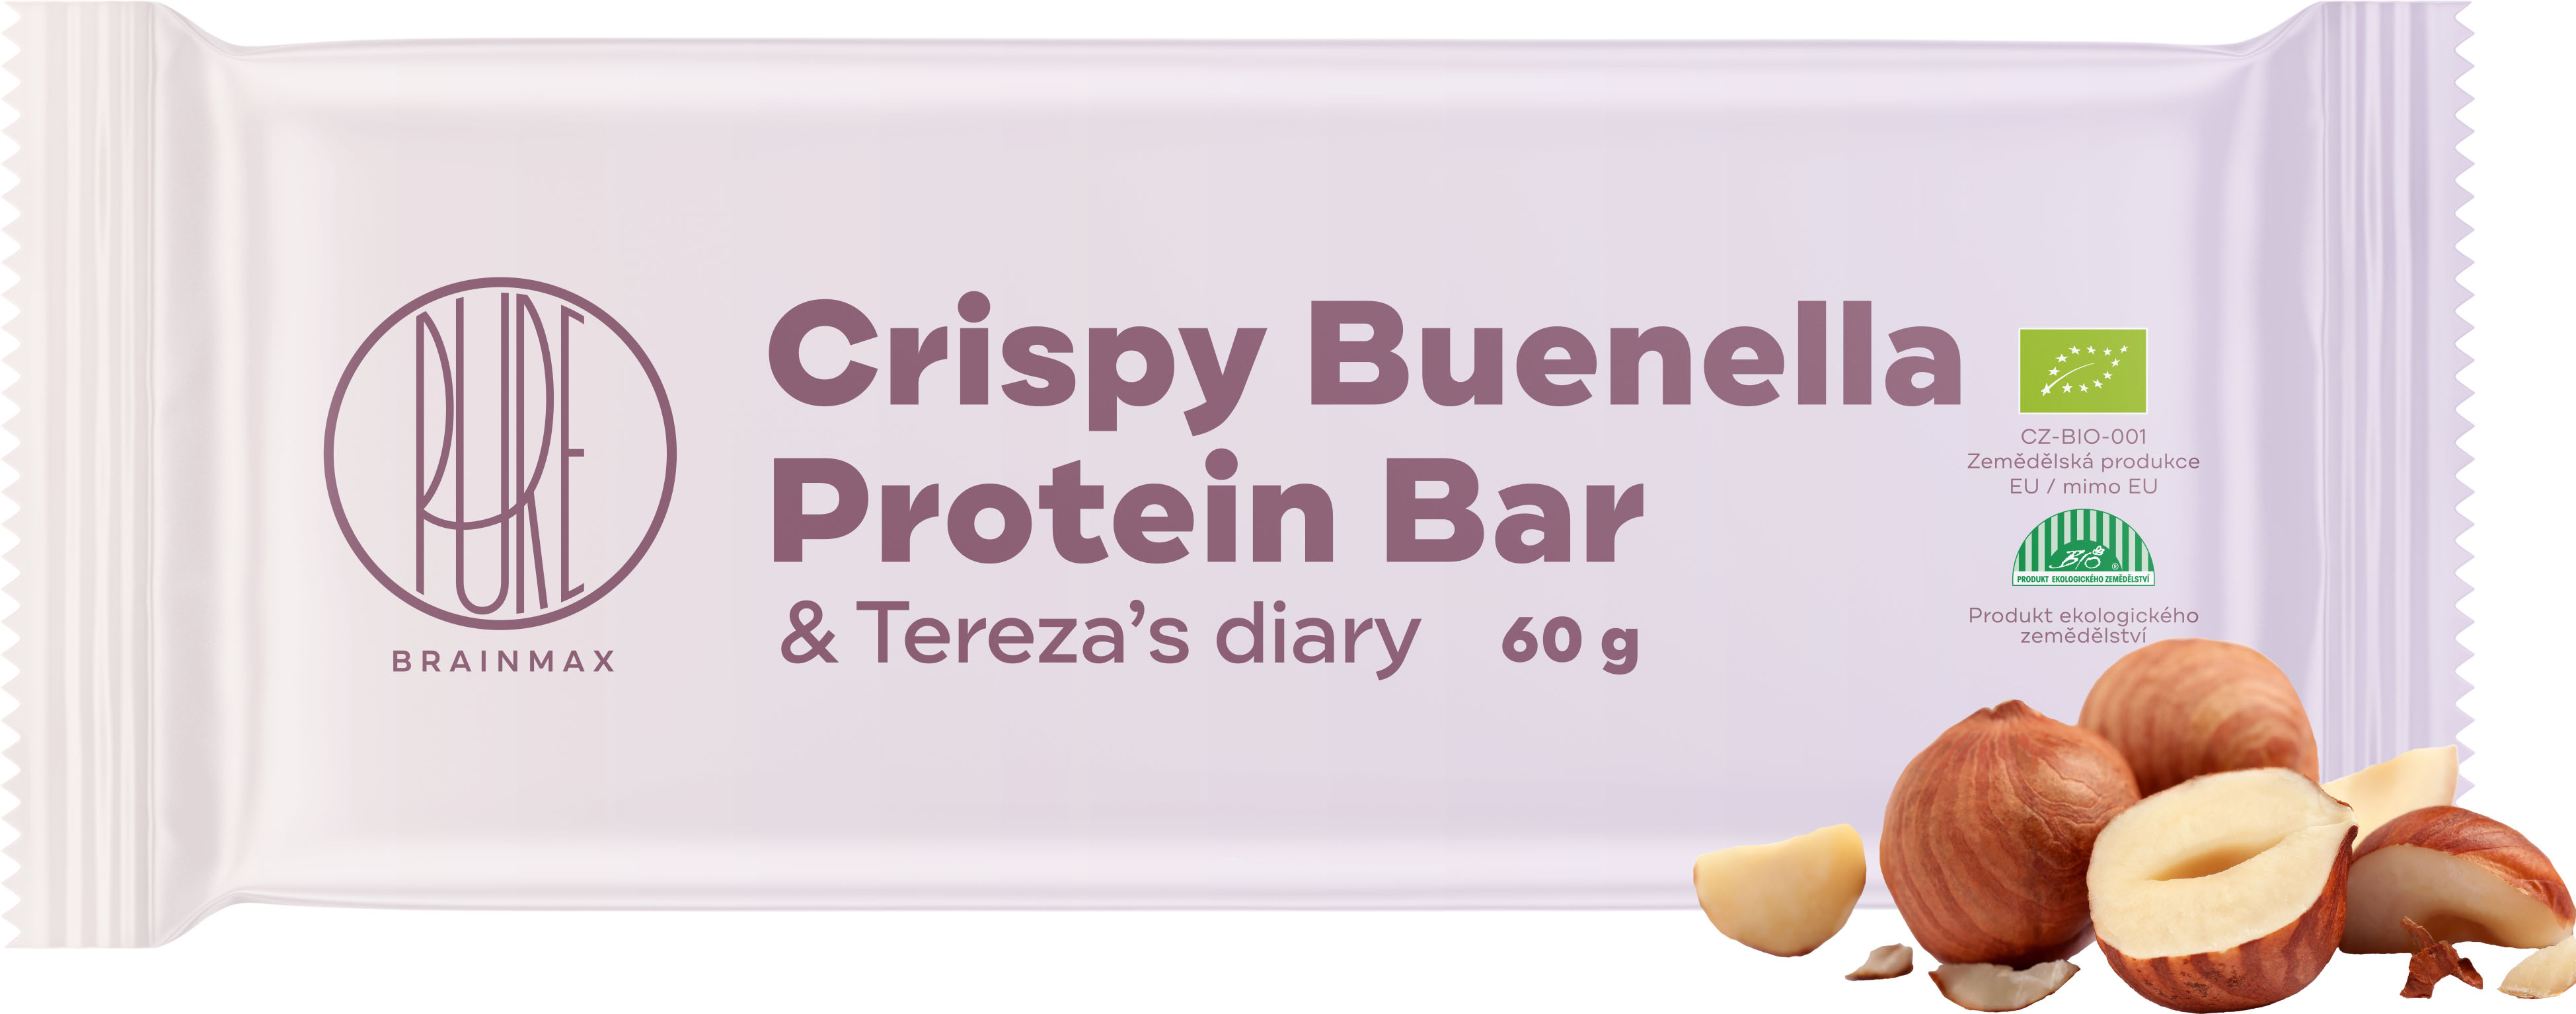 BrainMax Pure Crispy Buenella & Tereza's Diary Protein Bar, Proteinová tyčinka, Buenella, BIO, 60 g Crispy Buenella Protein Bar / *CZ-BIO-001 certifikát